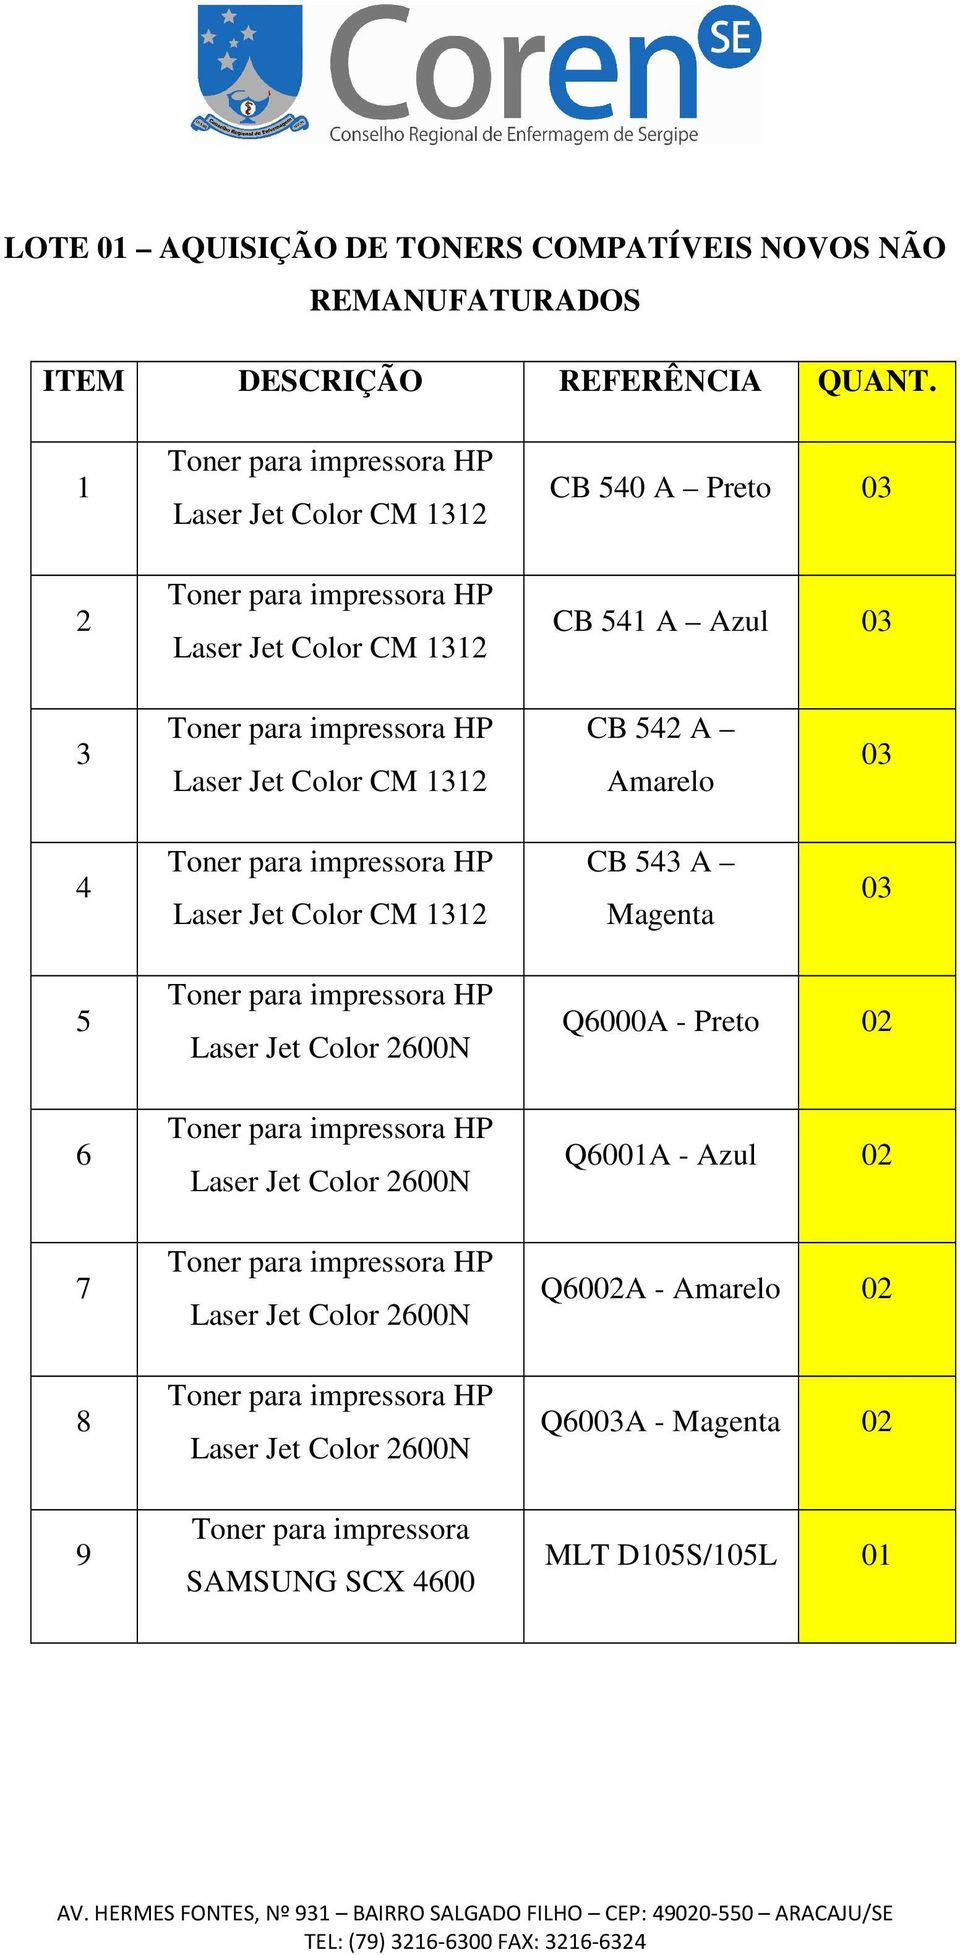 Color CM 1312 CB 542 A Amarelo 03 4 Toner para impressora HP Laser Jet Color CM 1312 CB 543 A Magenta 03 5 6 7 8 9 Toner para impressora HP Laser Jet Color 2600N Toner para